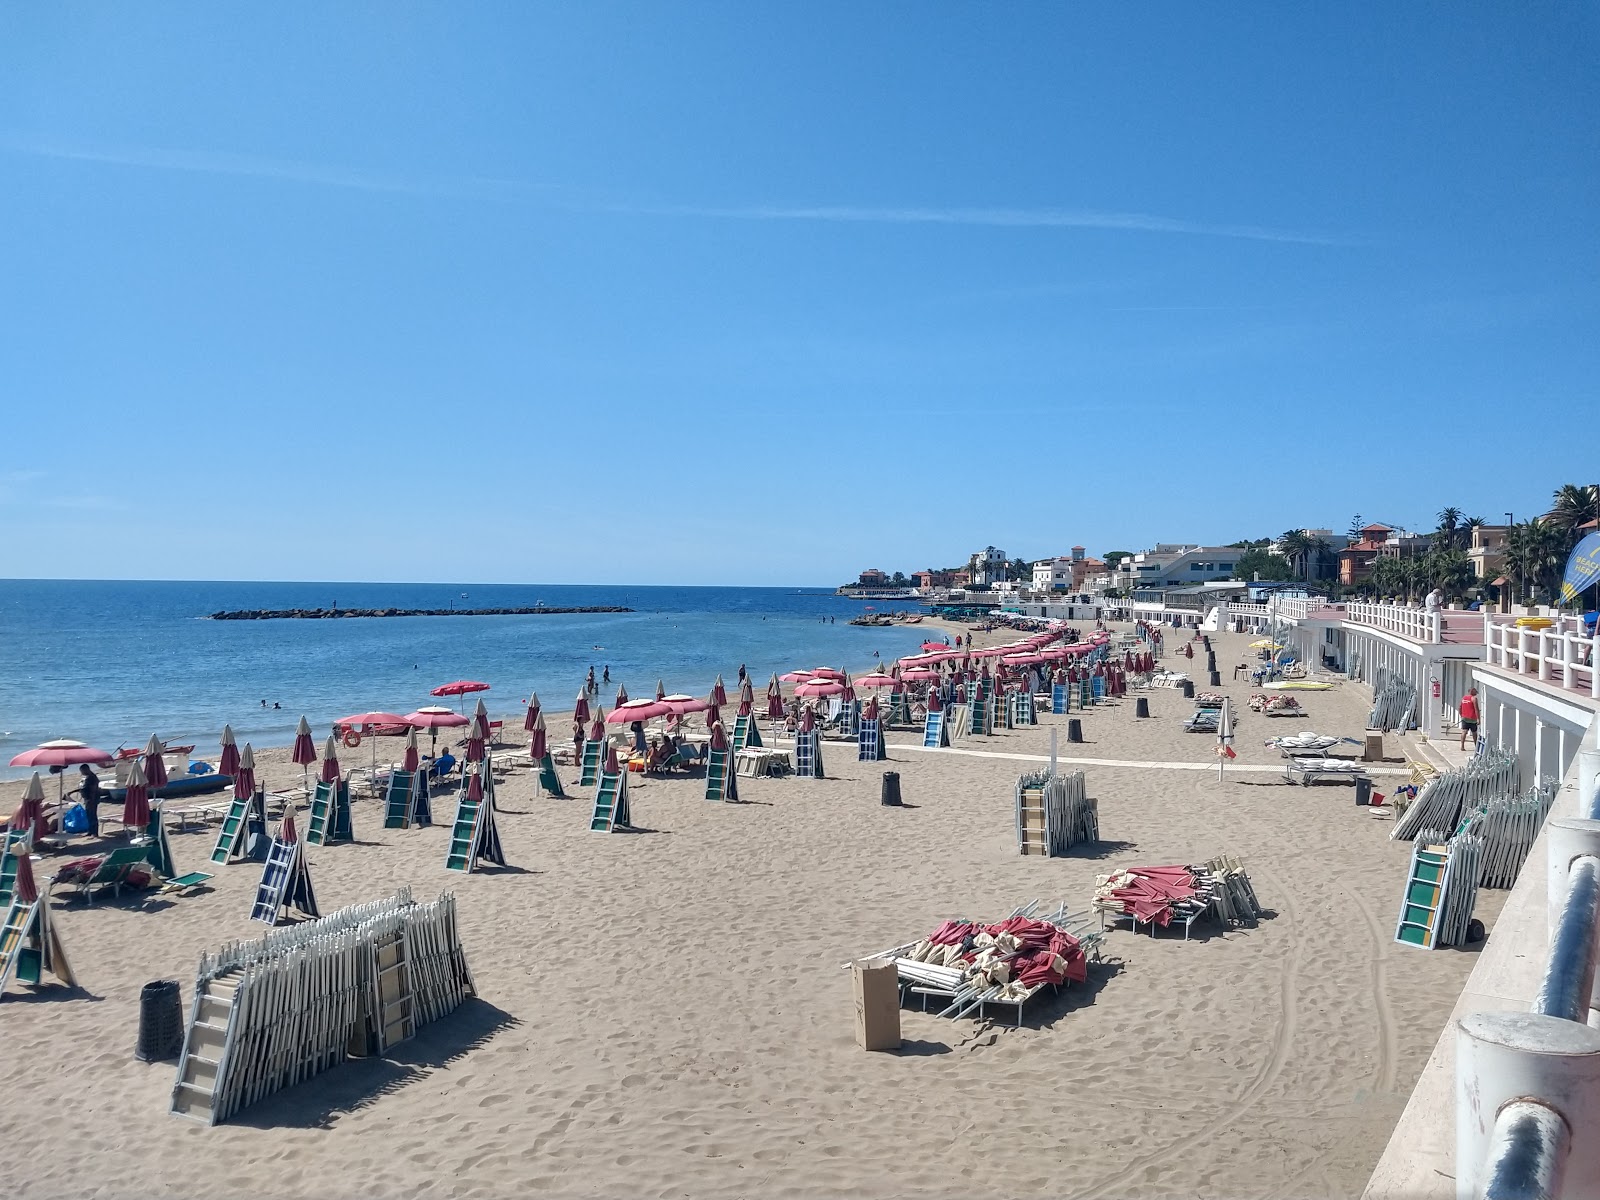 Santa Marinella beach'in fotoğrafı - Çocuklu aile gezginleri için önerilir